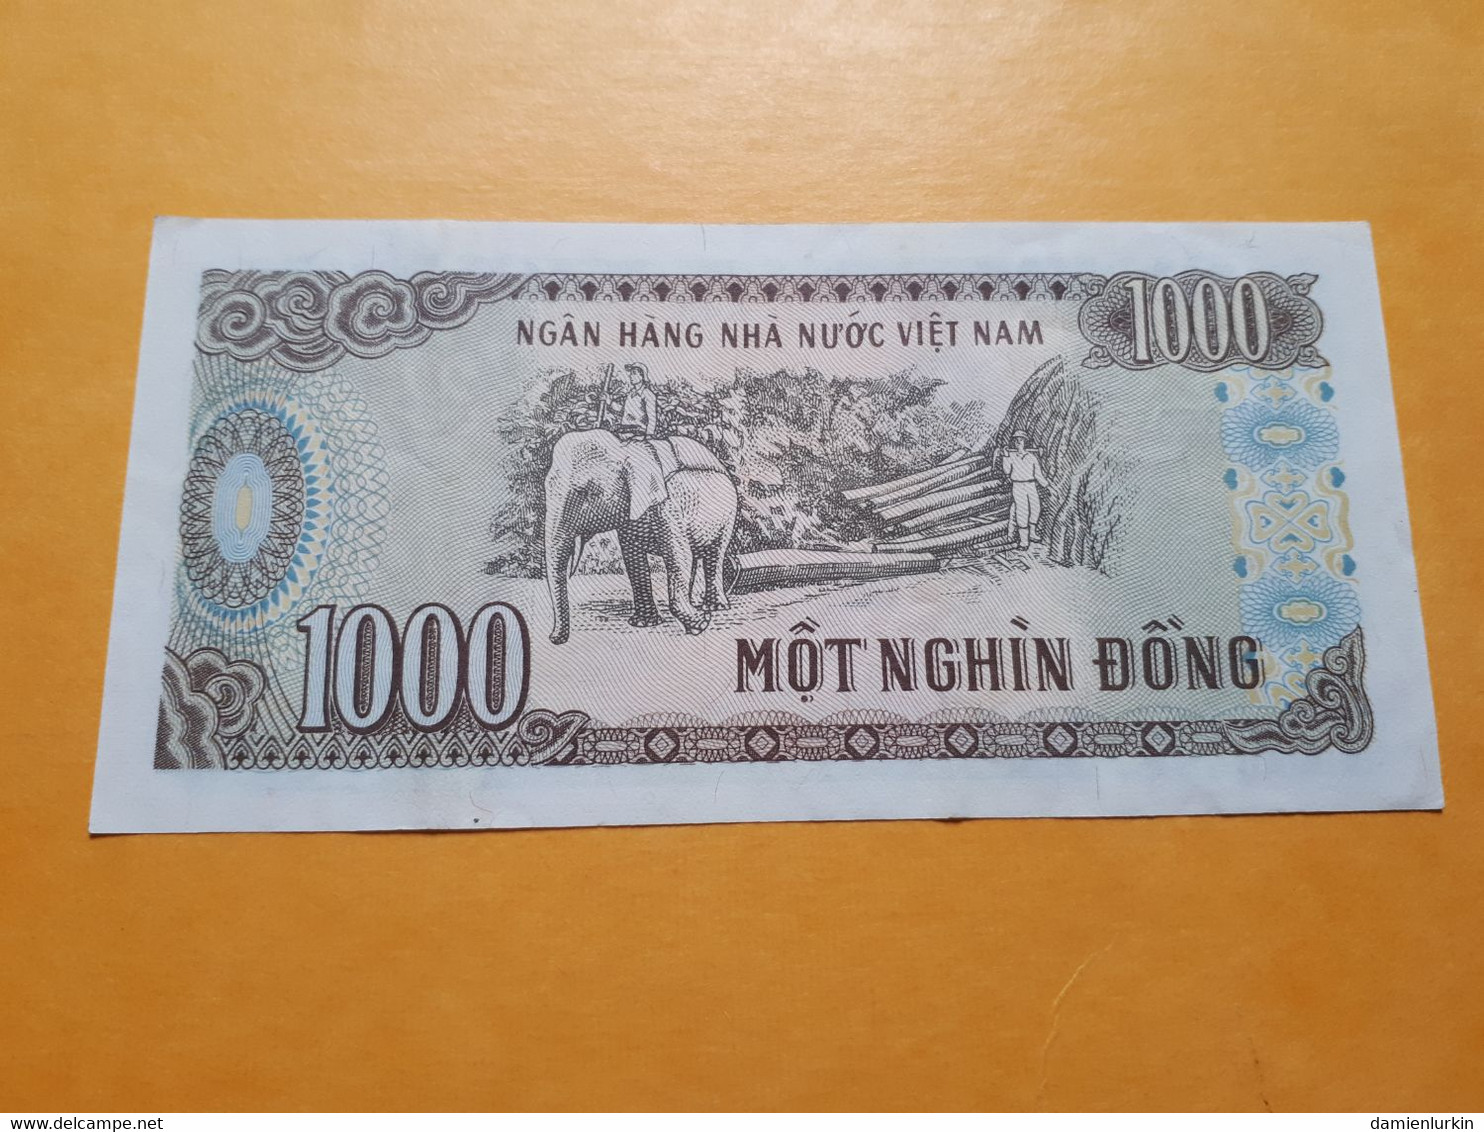 VIET NAM 1000 DONG 1988 PEU CIRCULé - Vietnam